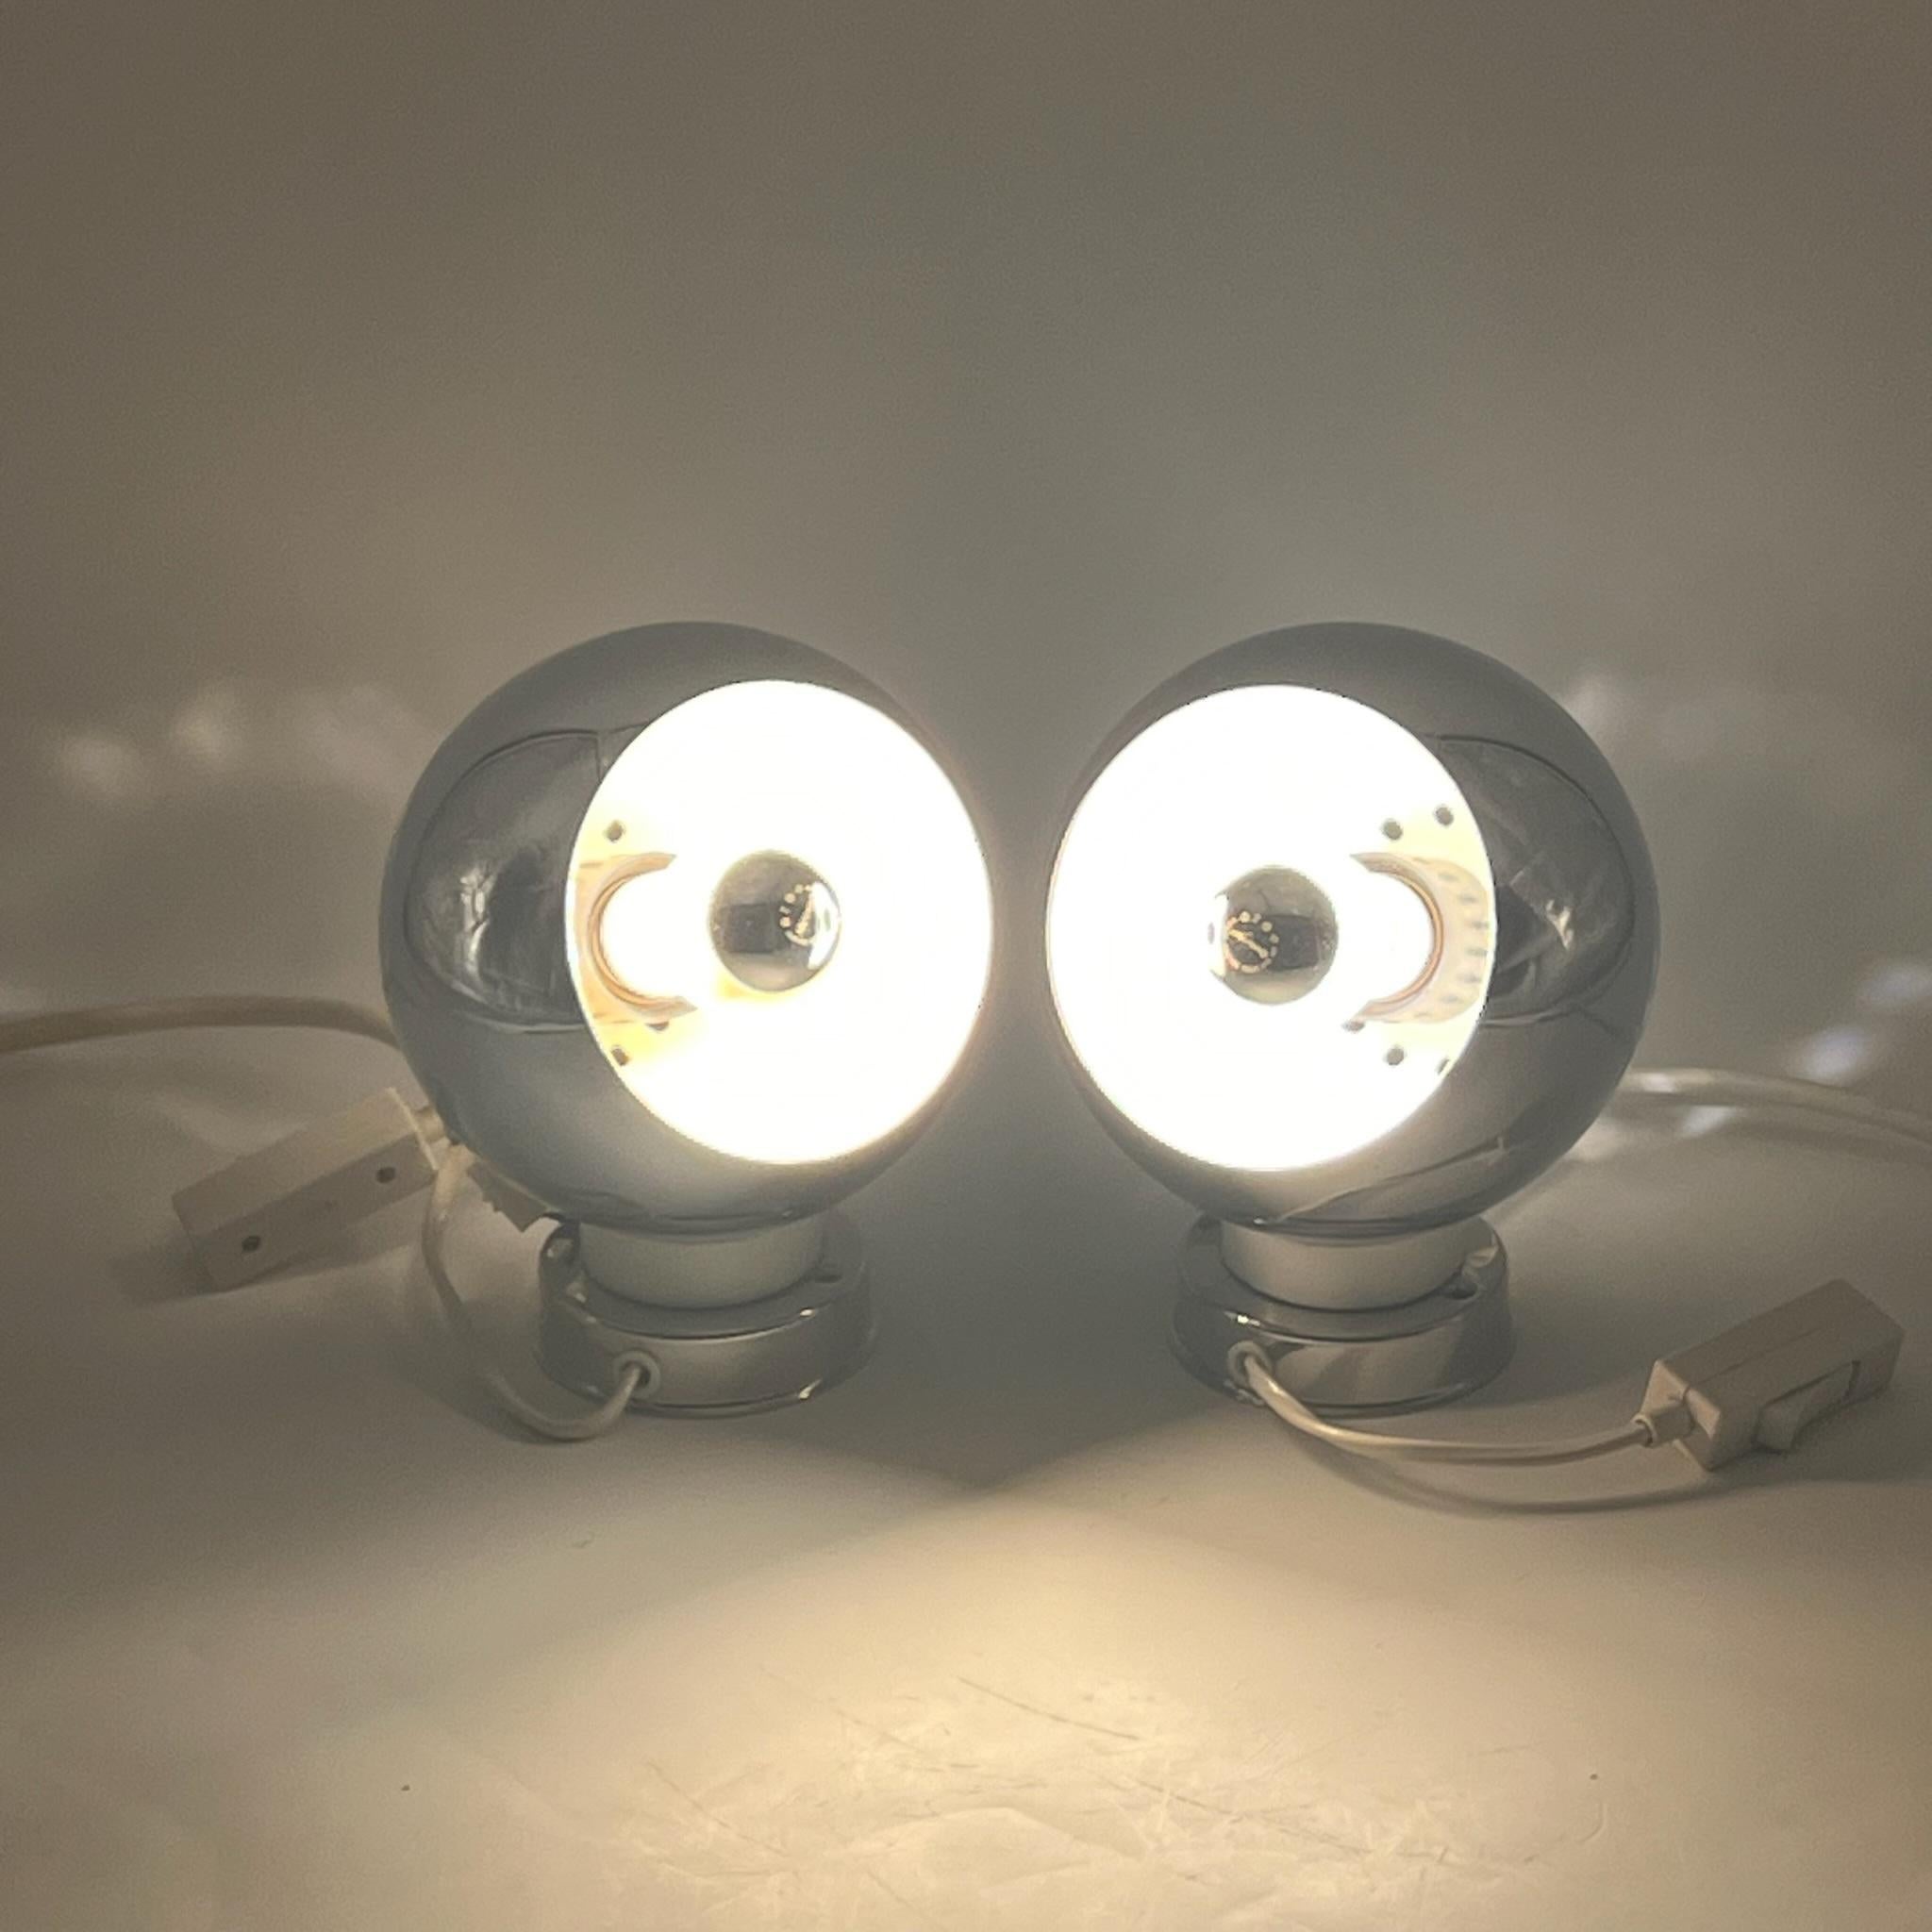 Plongez dans l'élégance intemporelle du design italien des années 1960 avec cette incroyable paire de lampes à globe oculaire emblématiques fabriquées par Goffredo Reggiani. Fabriquées en Italie avec une attention méticuleuse aux détails, ces lampes